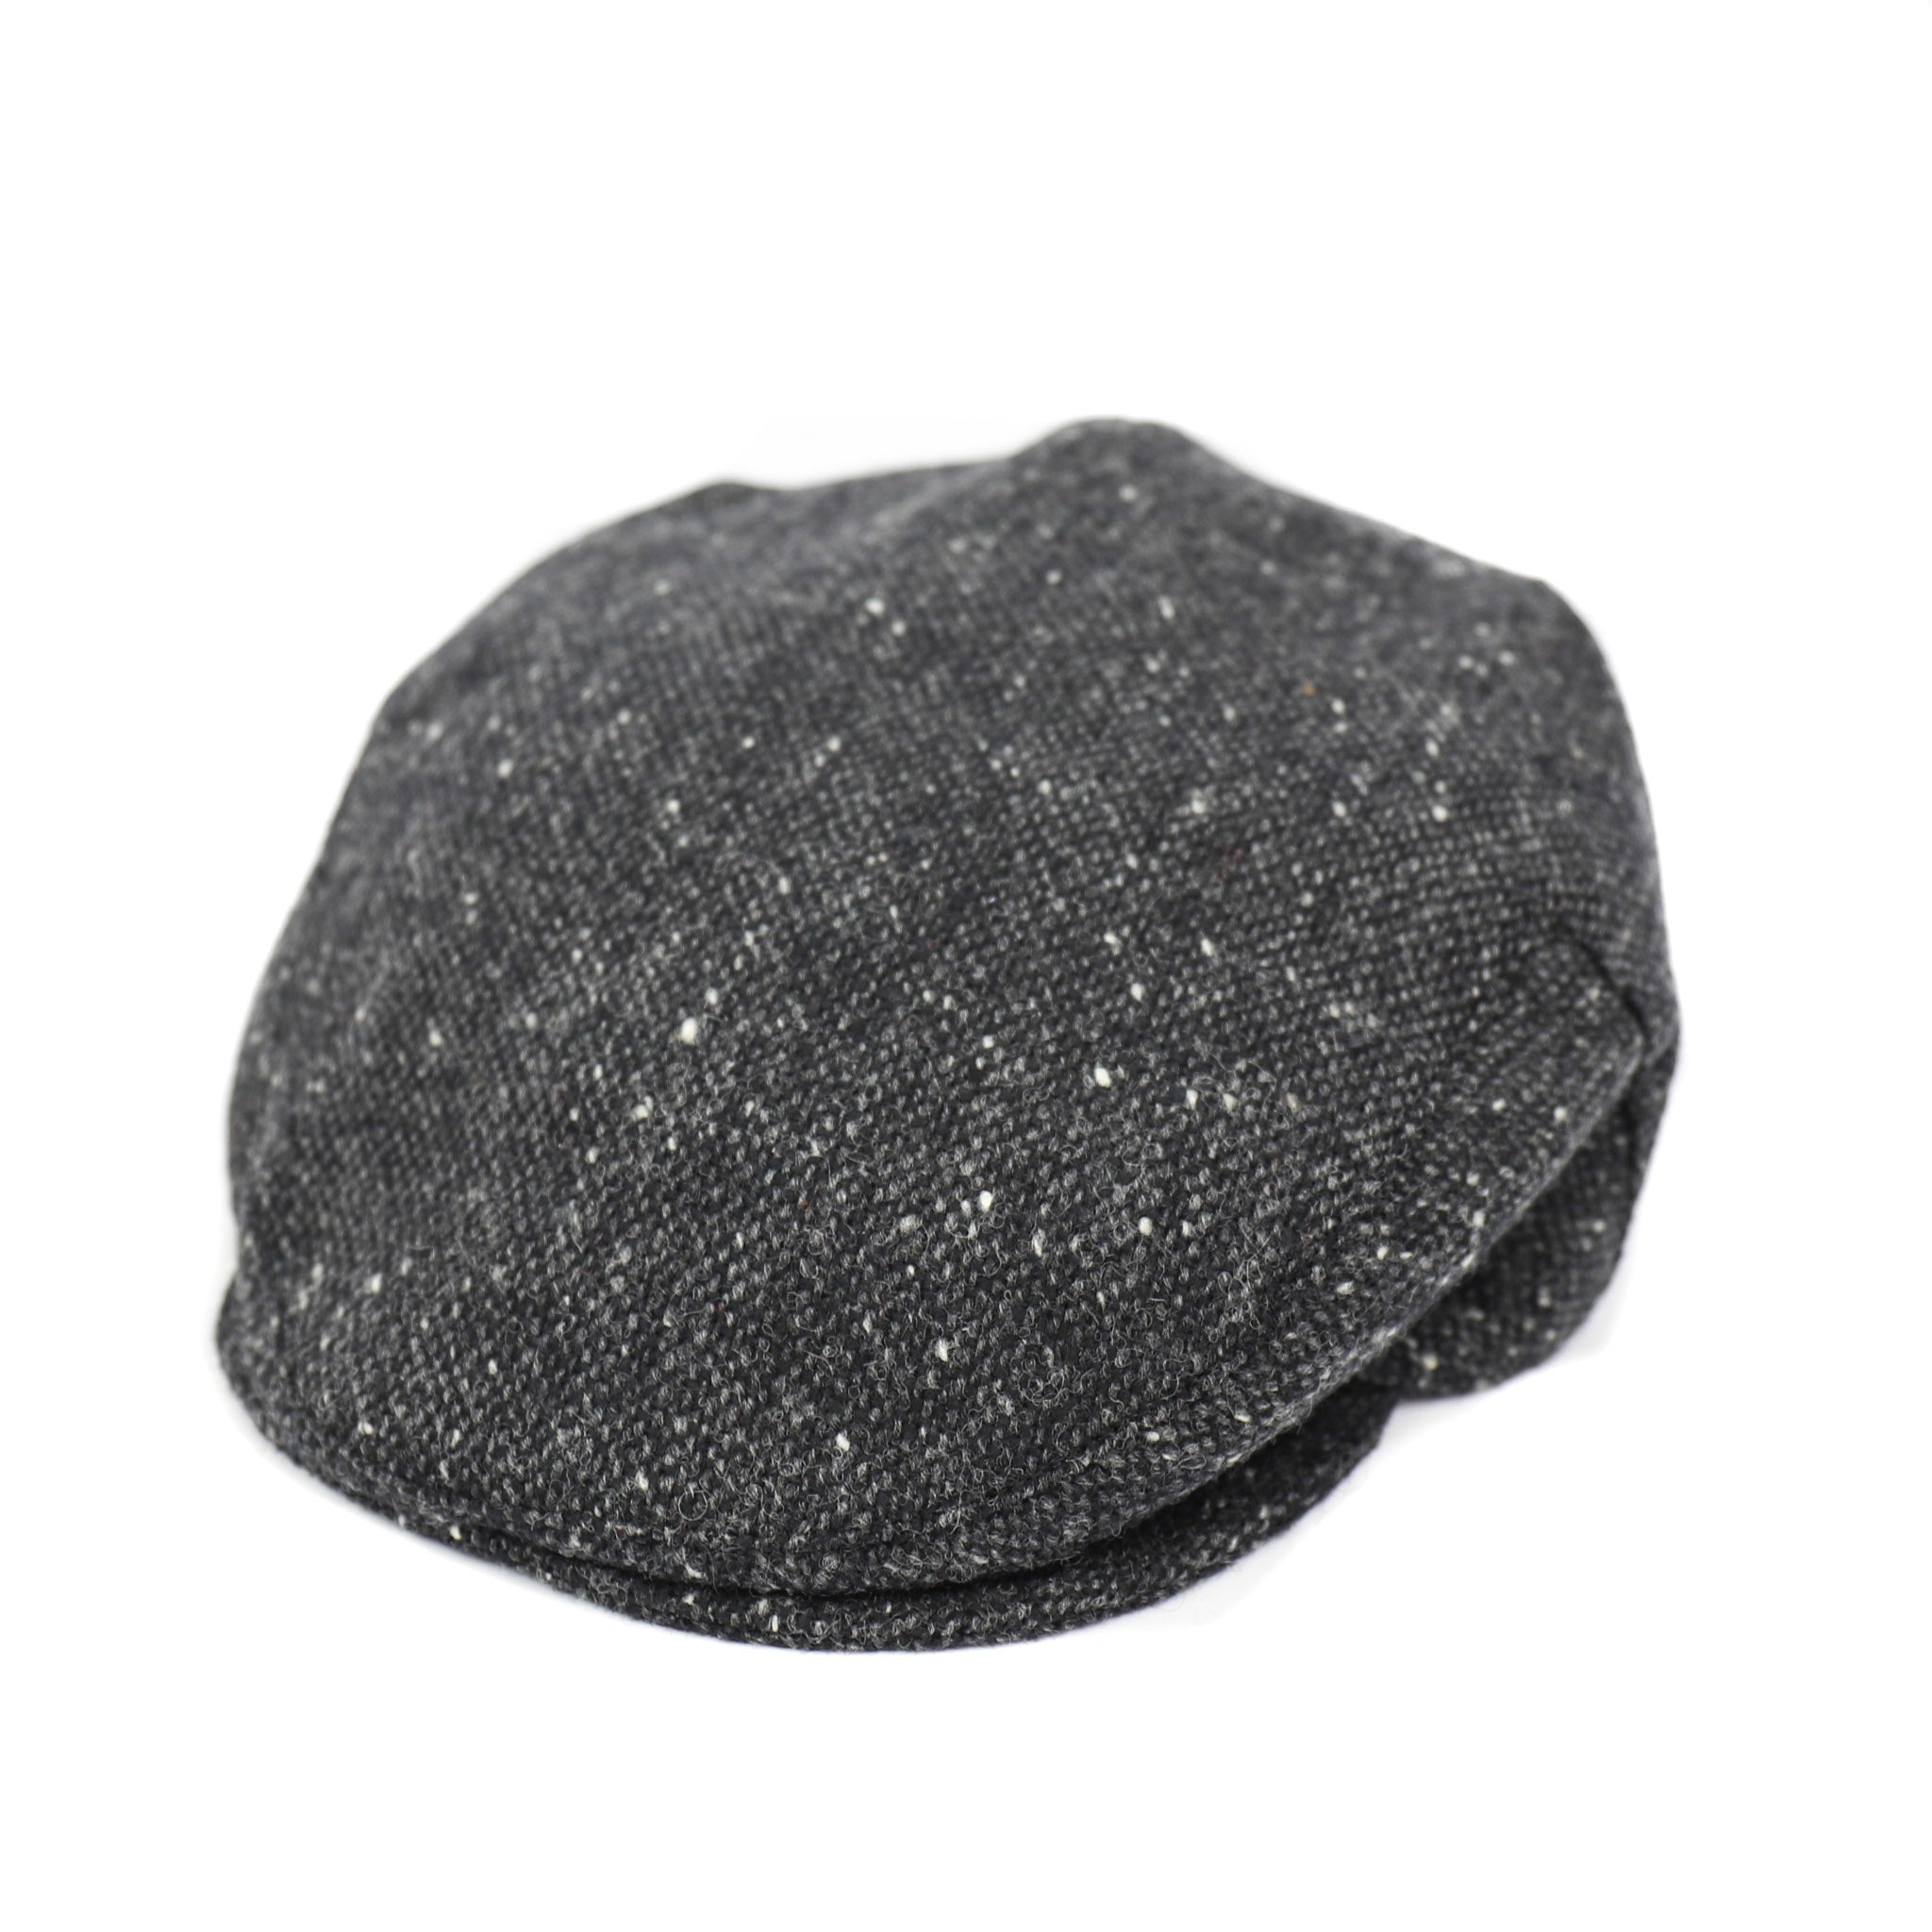 Flatcap Tweed - Grijs/zwart (D 30)